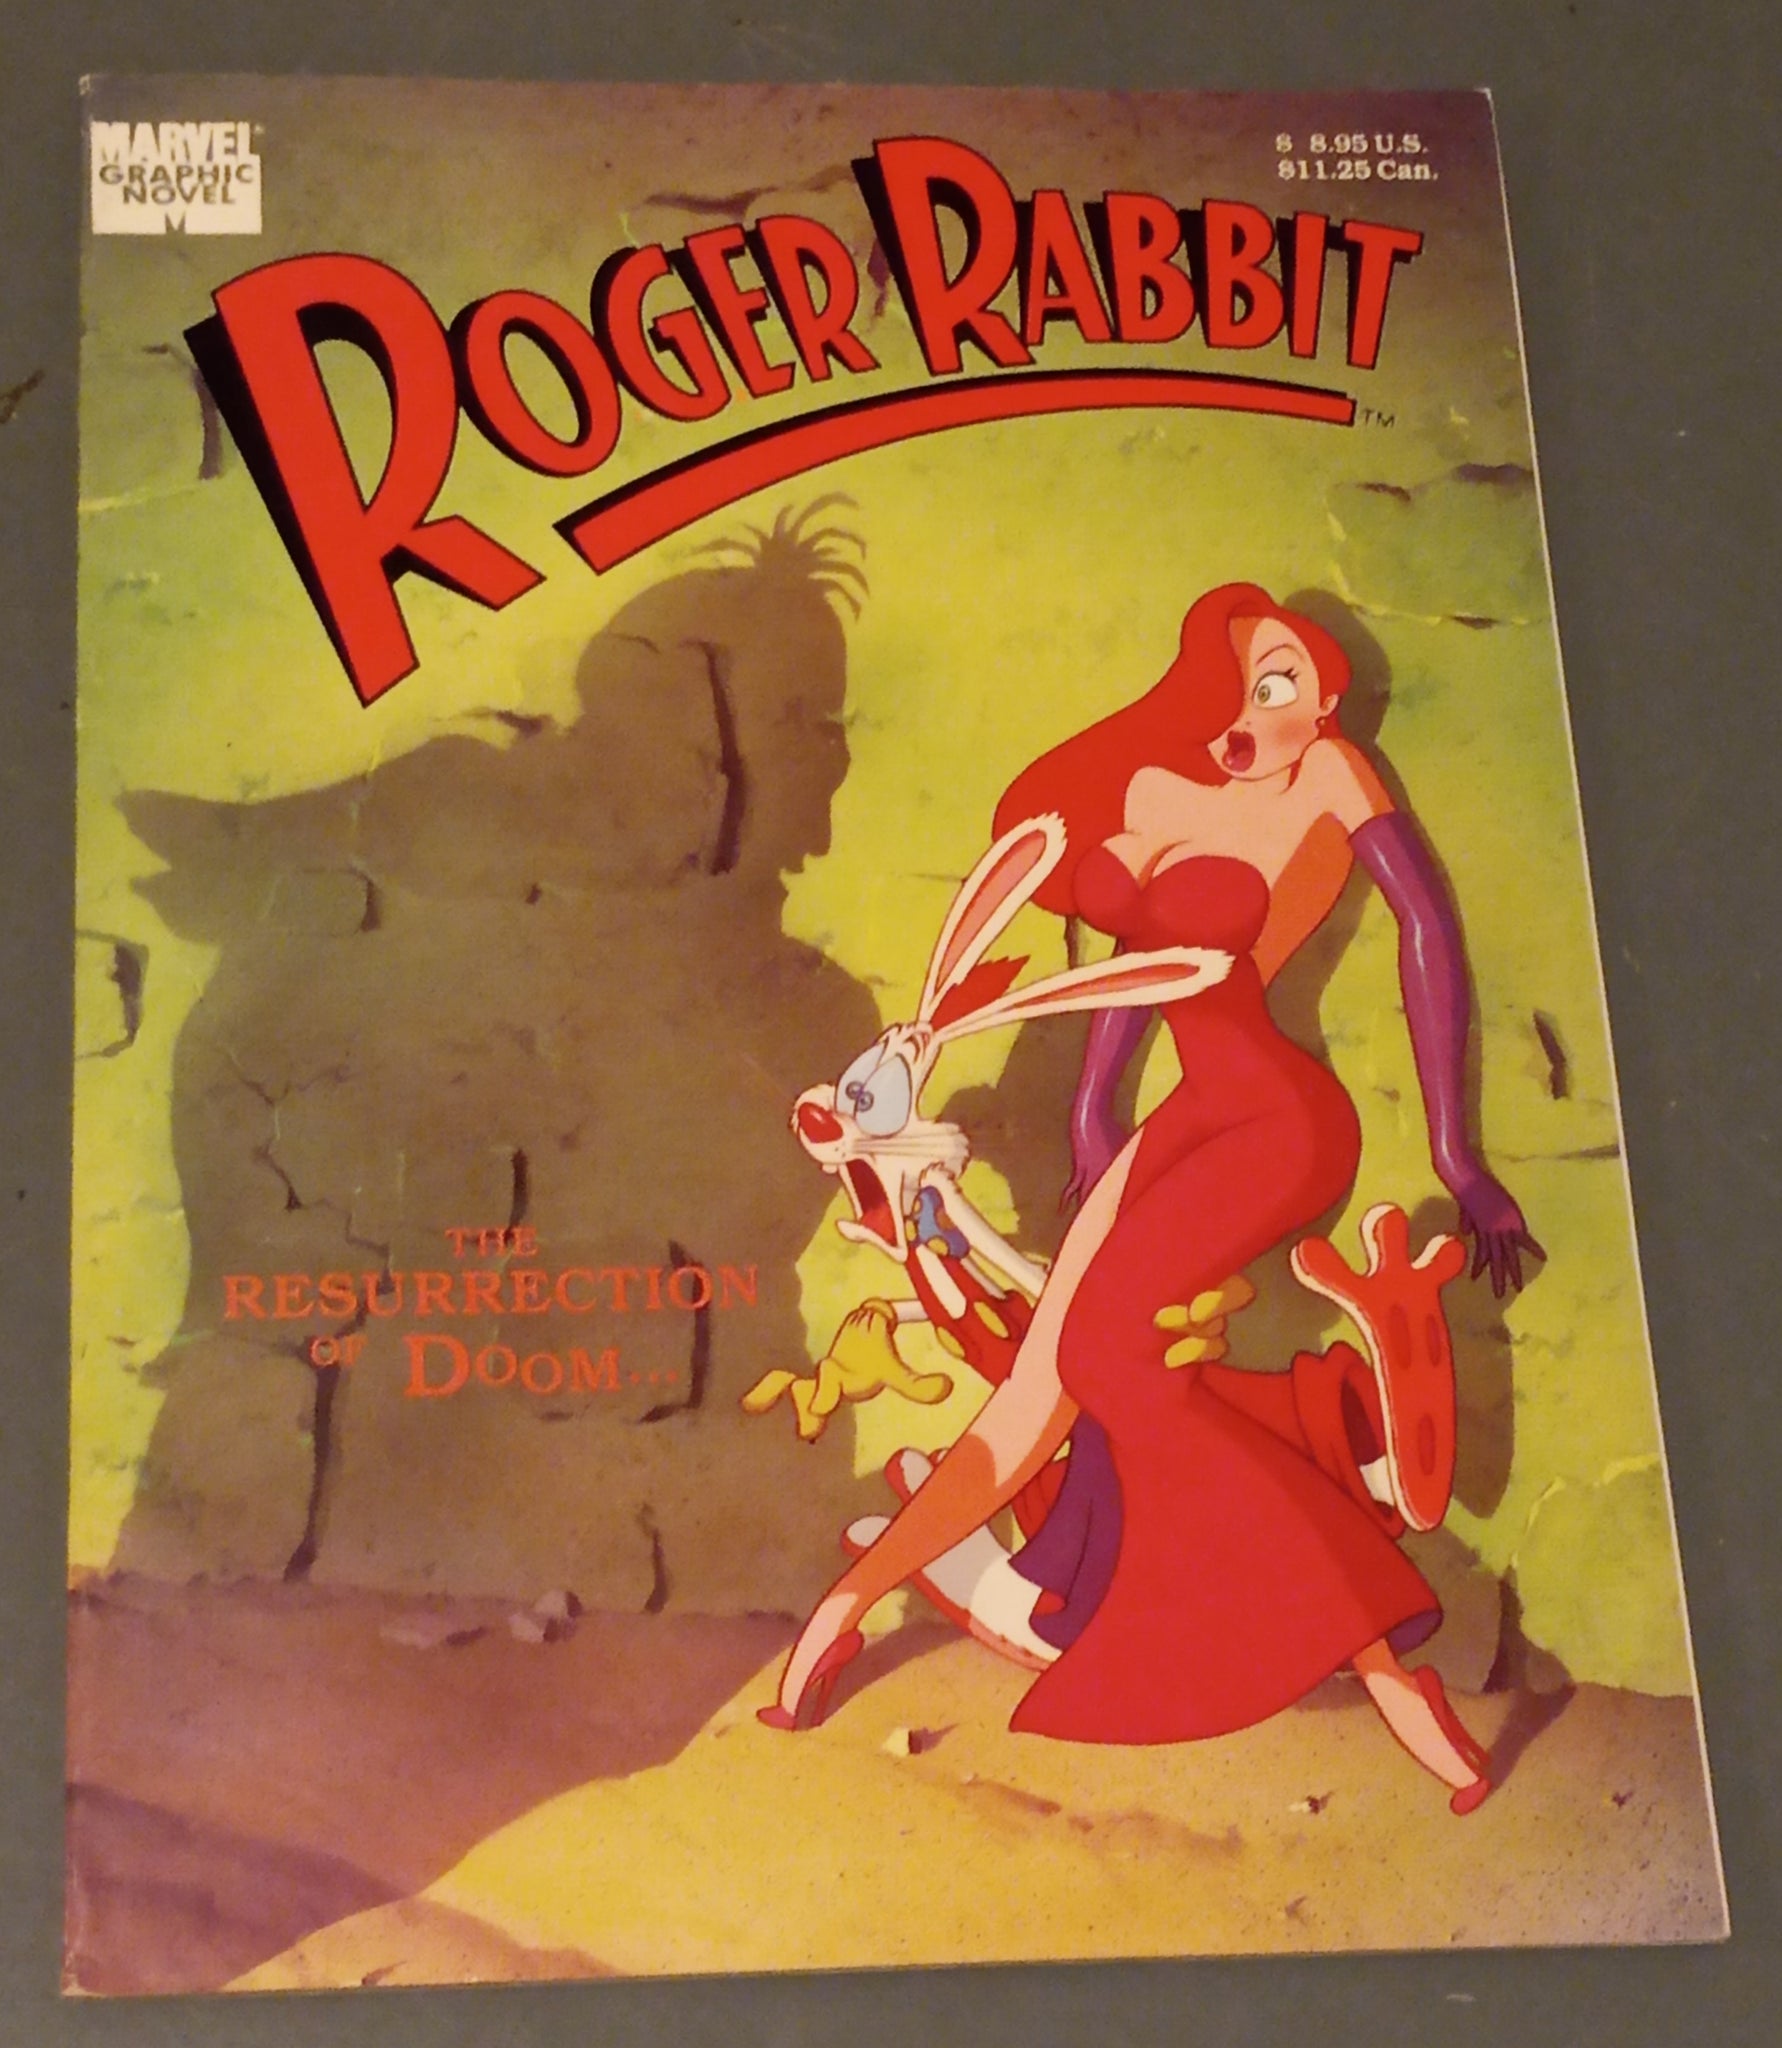 Roger Rabbit The Resurrection of Doom Graphic Novel VF